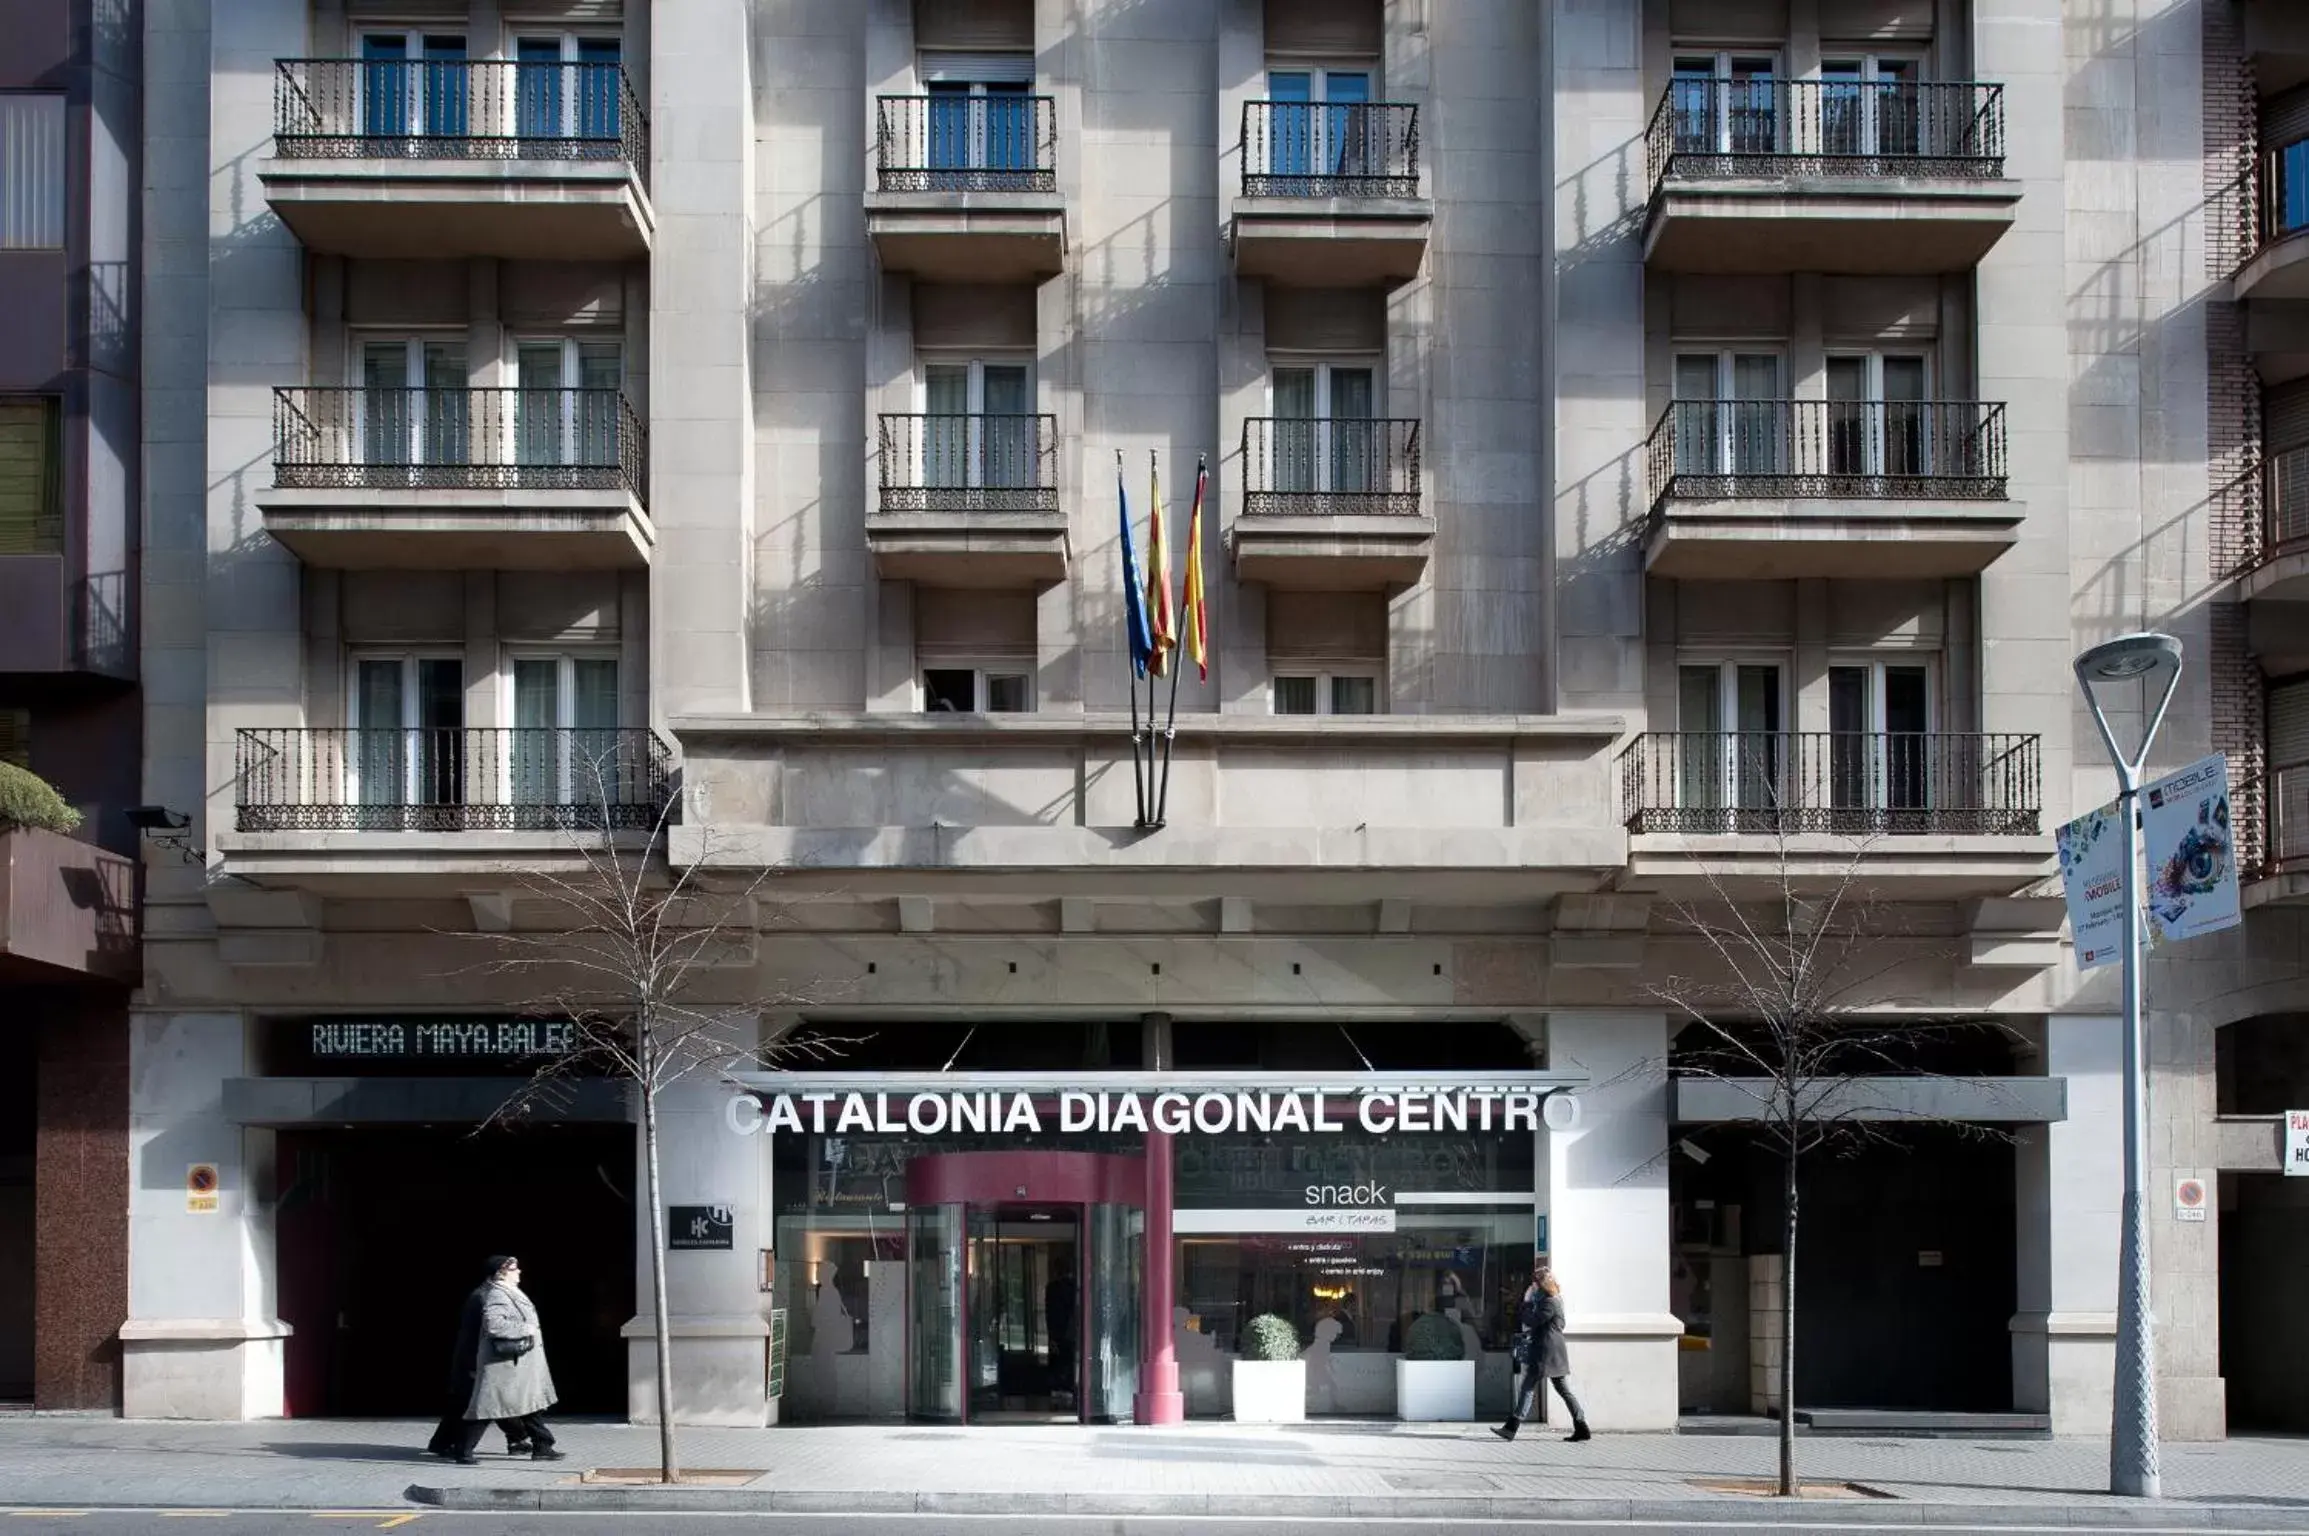 Facade/entrance, Property Building in Catalonia Diagonal Centro